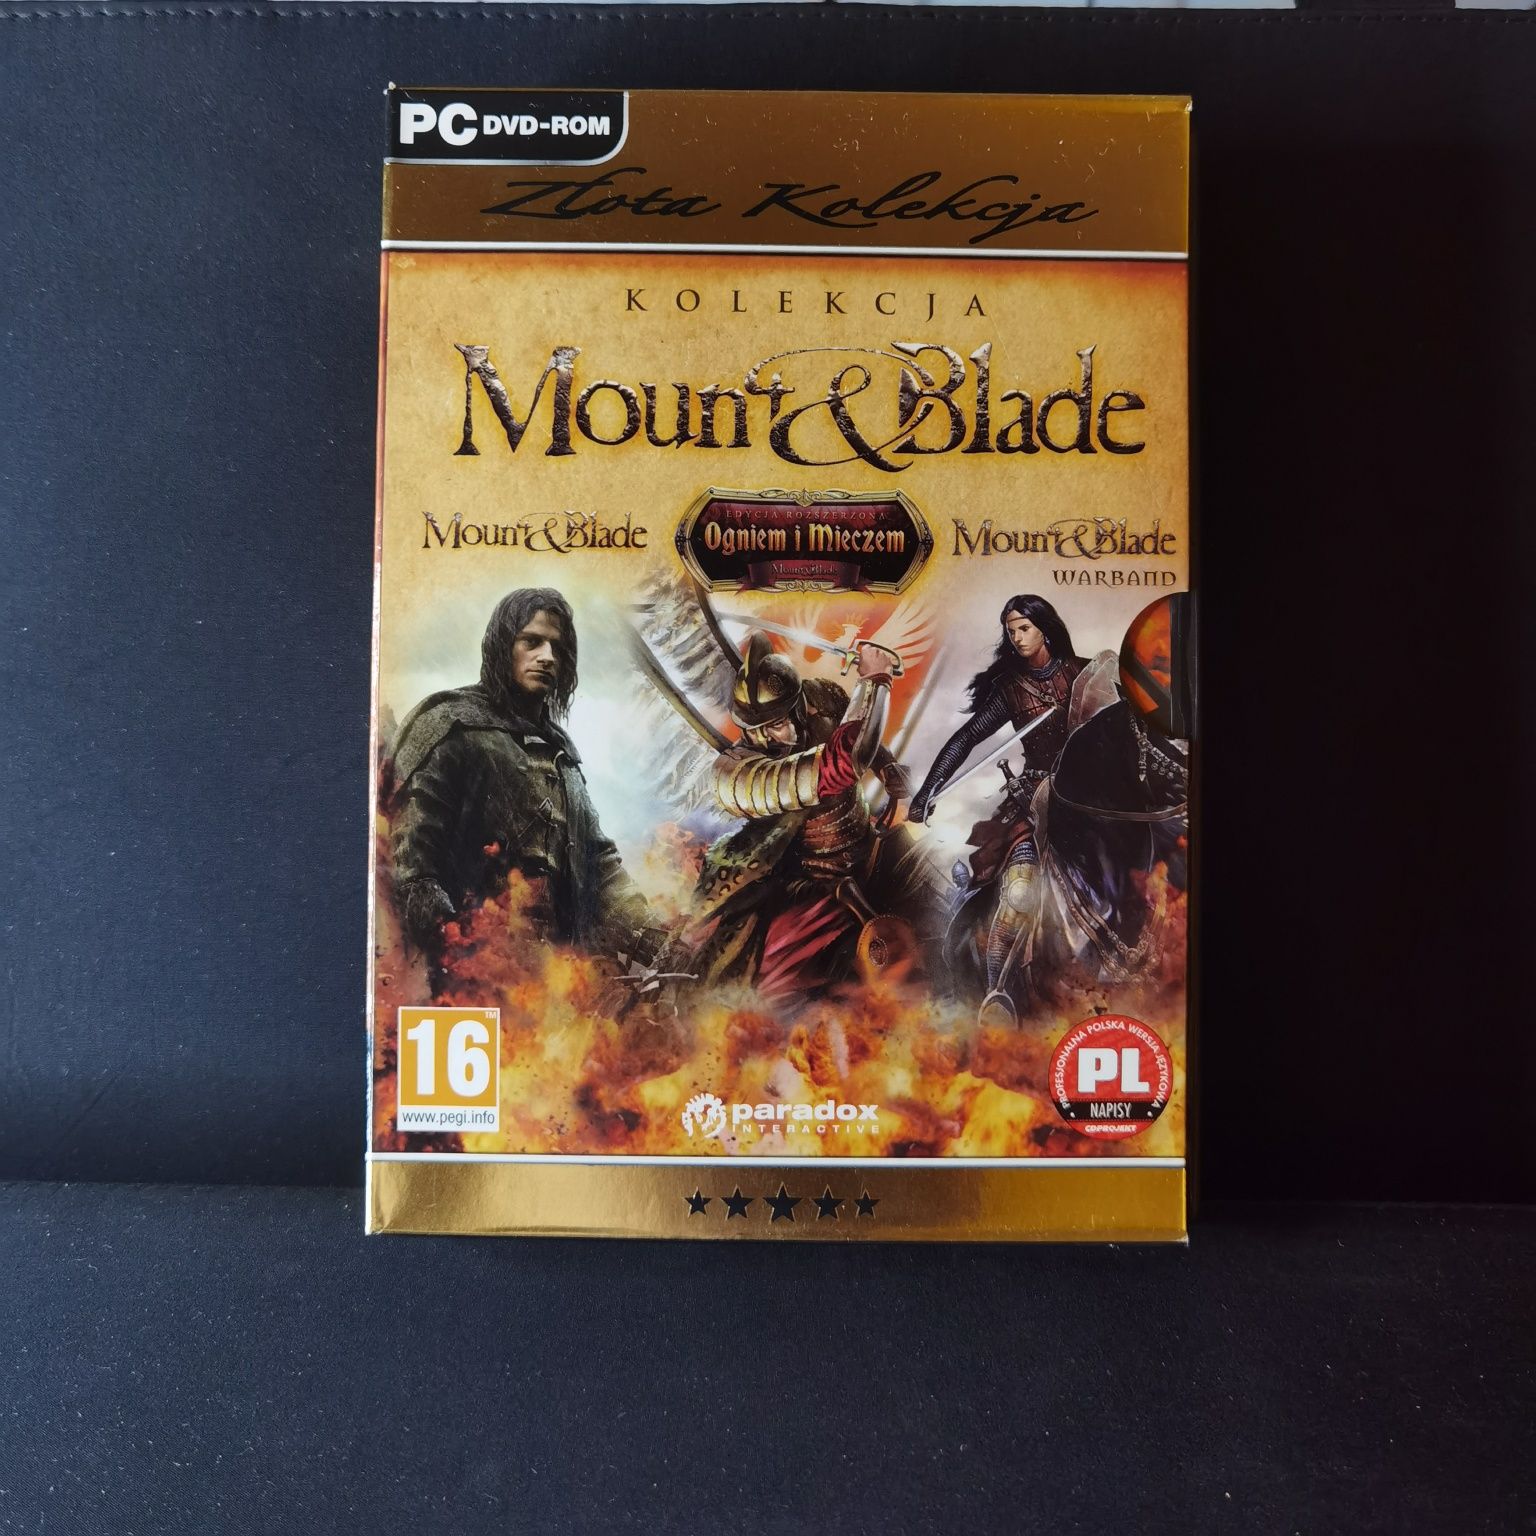 Mount Blade Ogniem i Mieczem Zlota Edycja PC